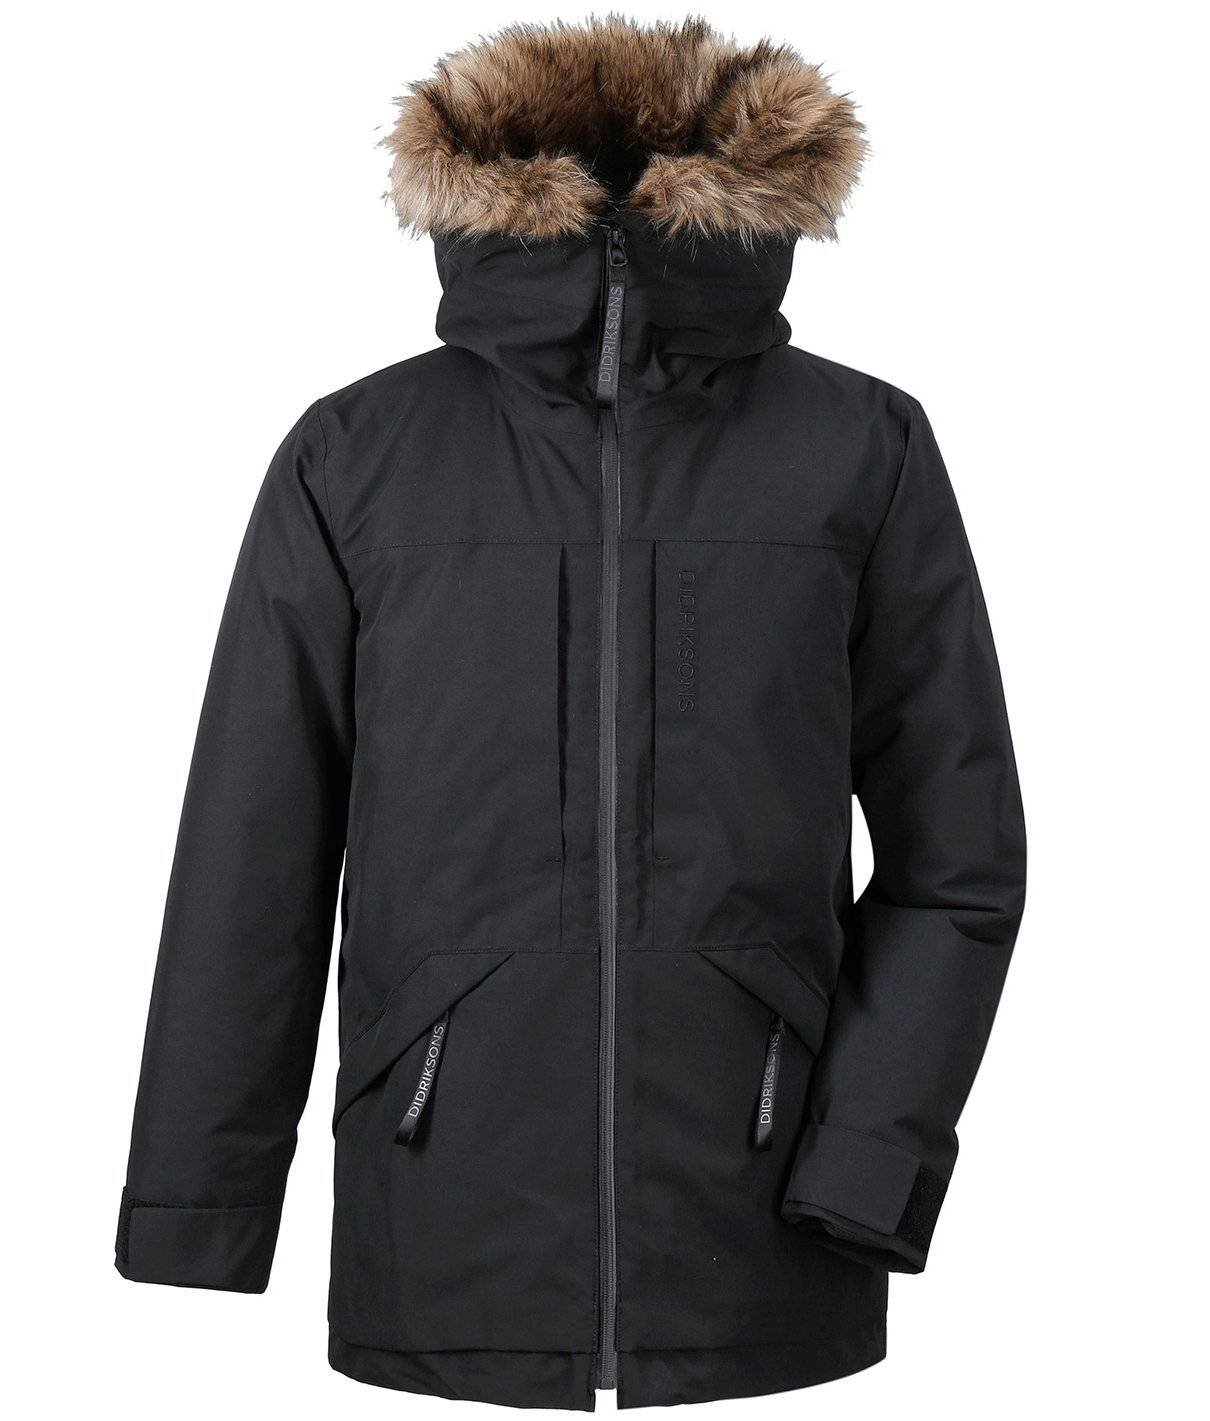 Купить куртка мужская didriksons lasse men's parka, 060 черный, 503445,  цена в интернет магазине Навелосипеде.рф